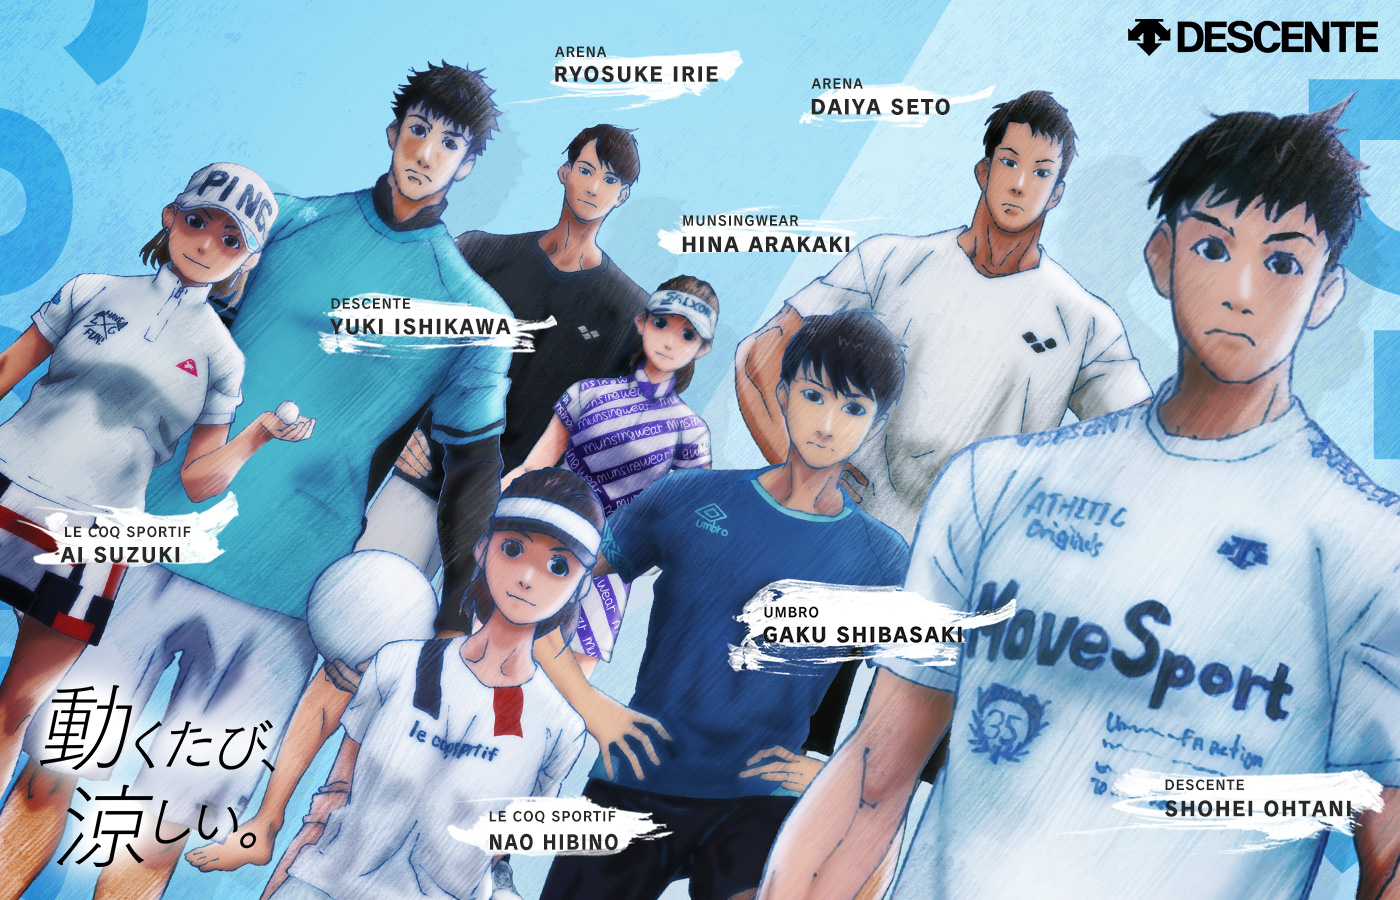 Descente sportswear line anime marketing campaign.